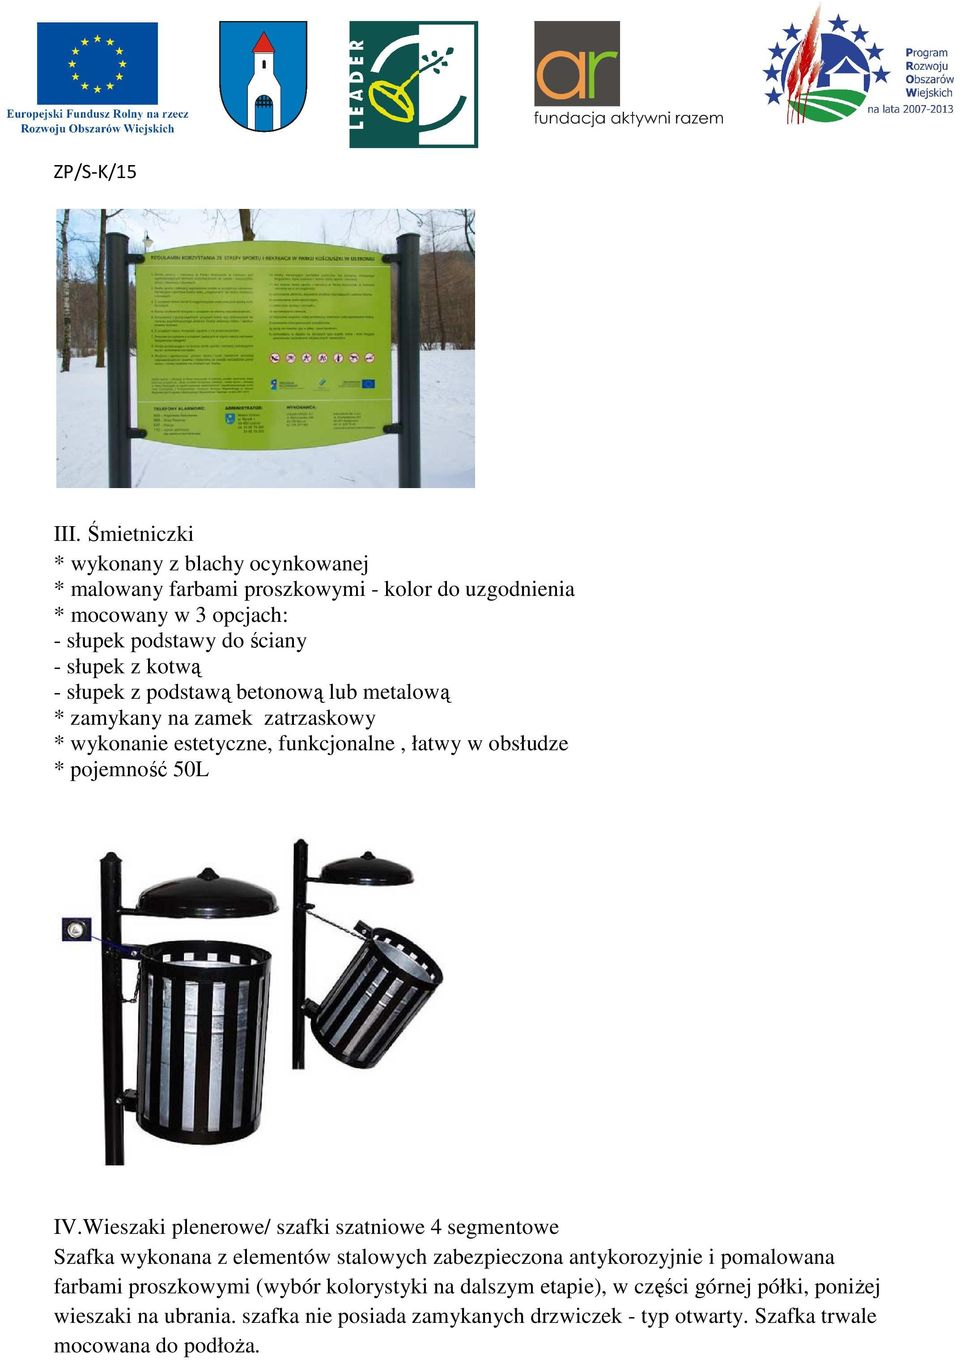 Wieszaki plenerowe/ szafki szatniowe 4 segmentowe Szafka wykonana z elementów stalowych zabezpieczona antykorozyjnie i pomalowana farbami proszkowymi (wybór